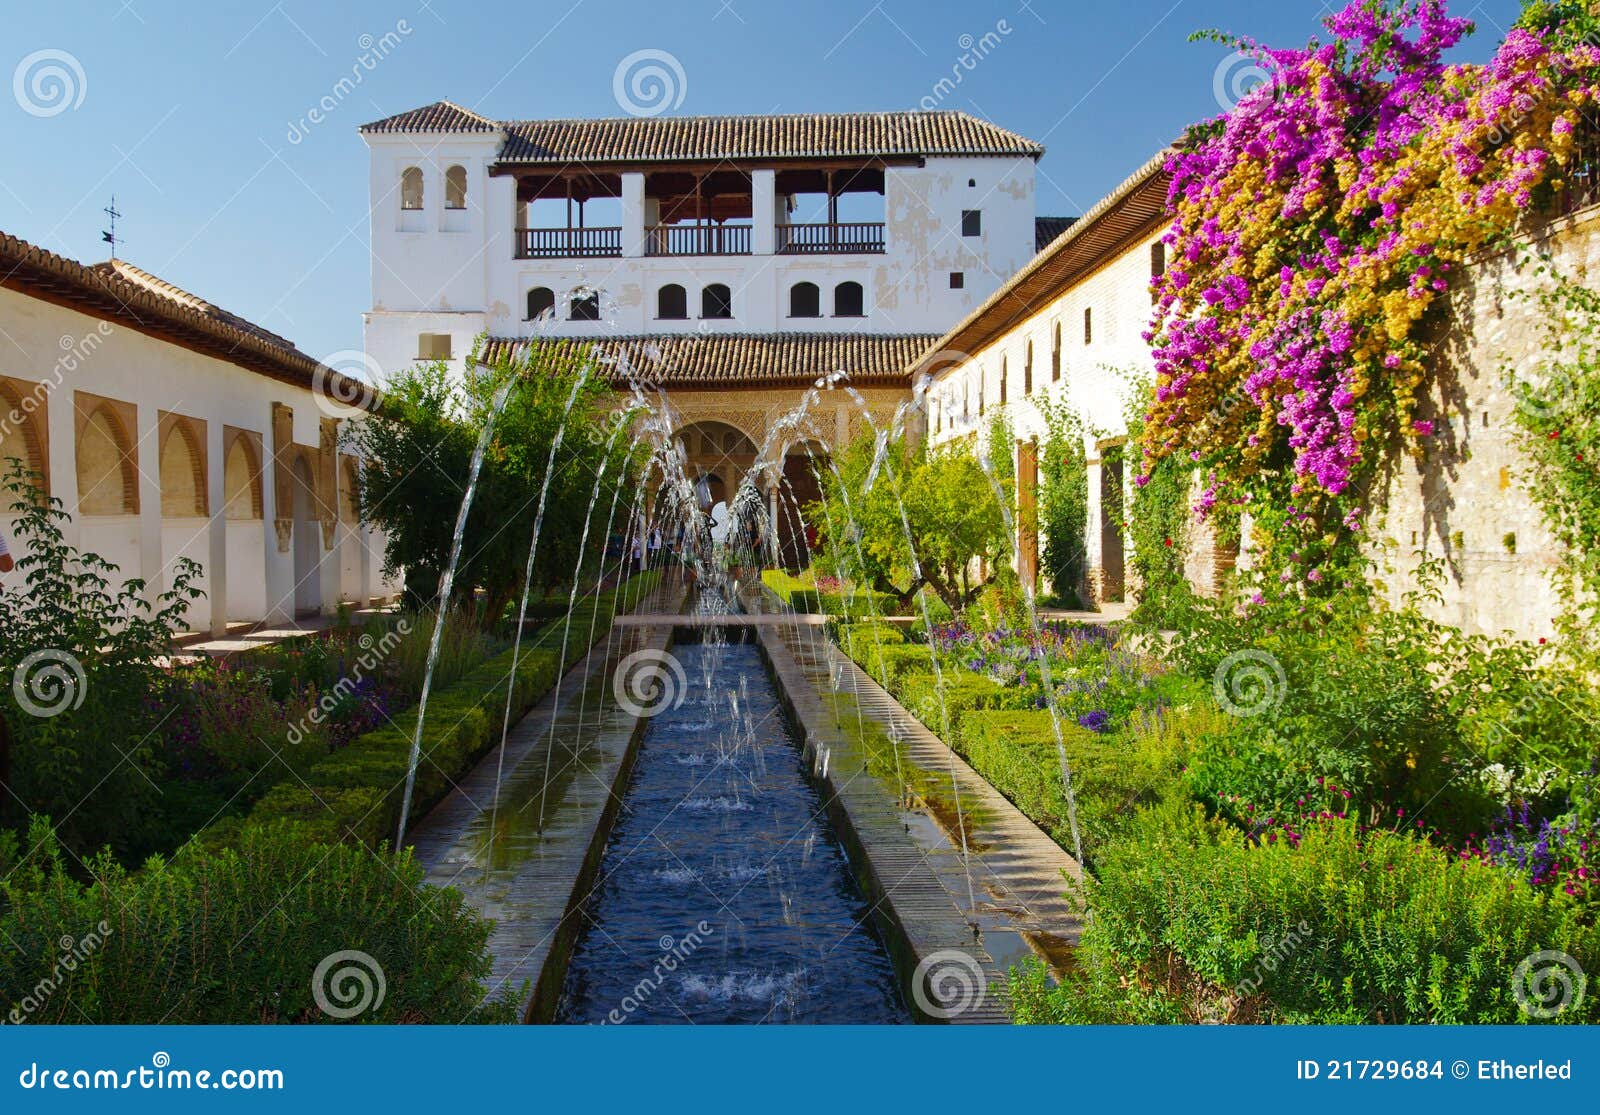 garden of alhambra